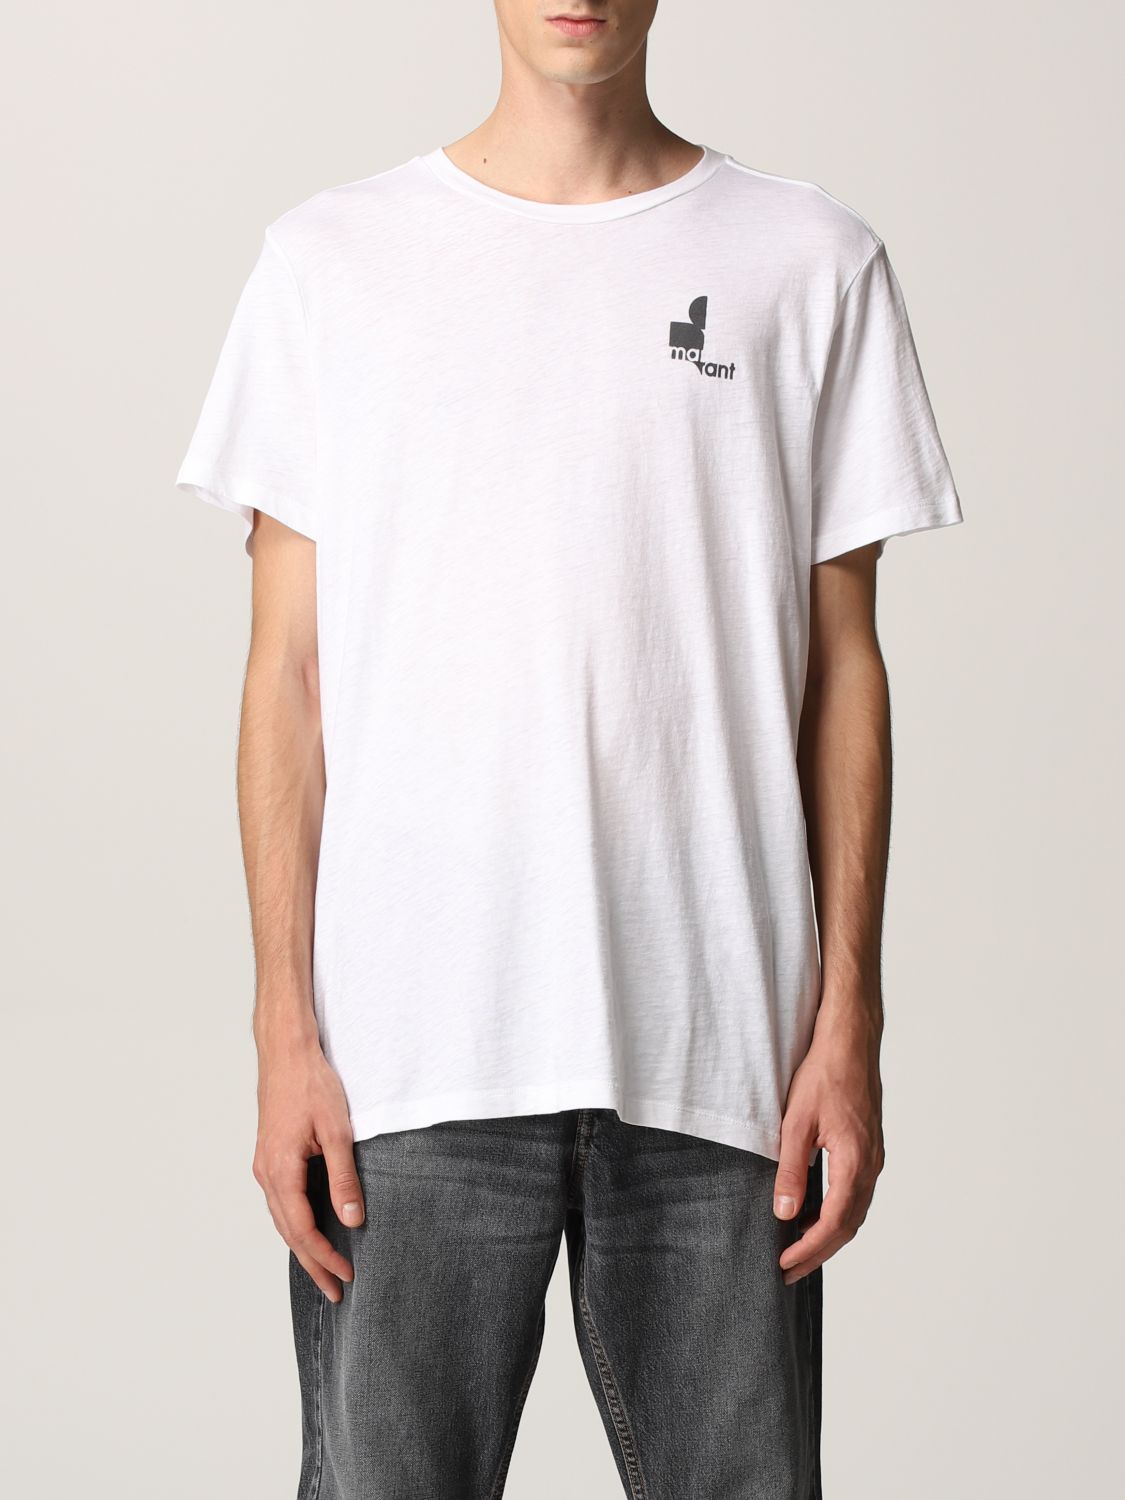 ISABEL MARANT ETOILE: Zafferh cotton t-shirt with logo - White | Isabel ...